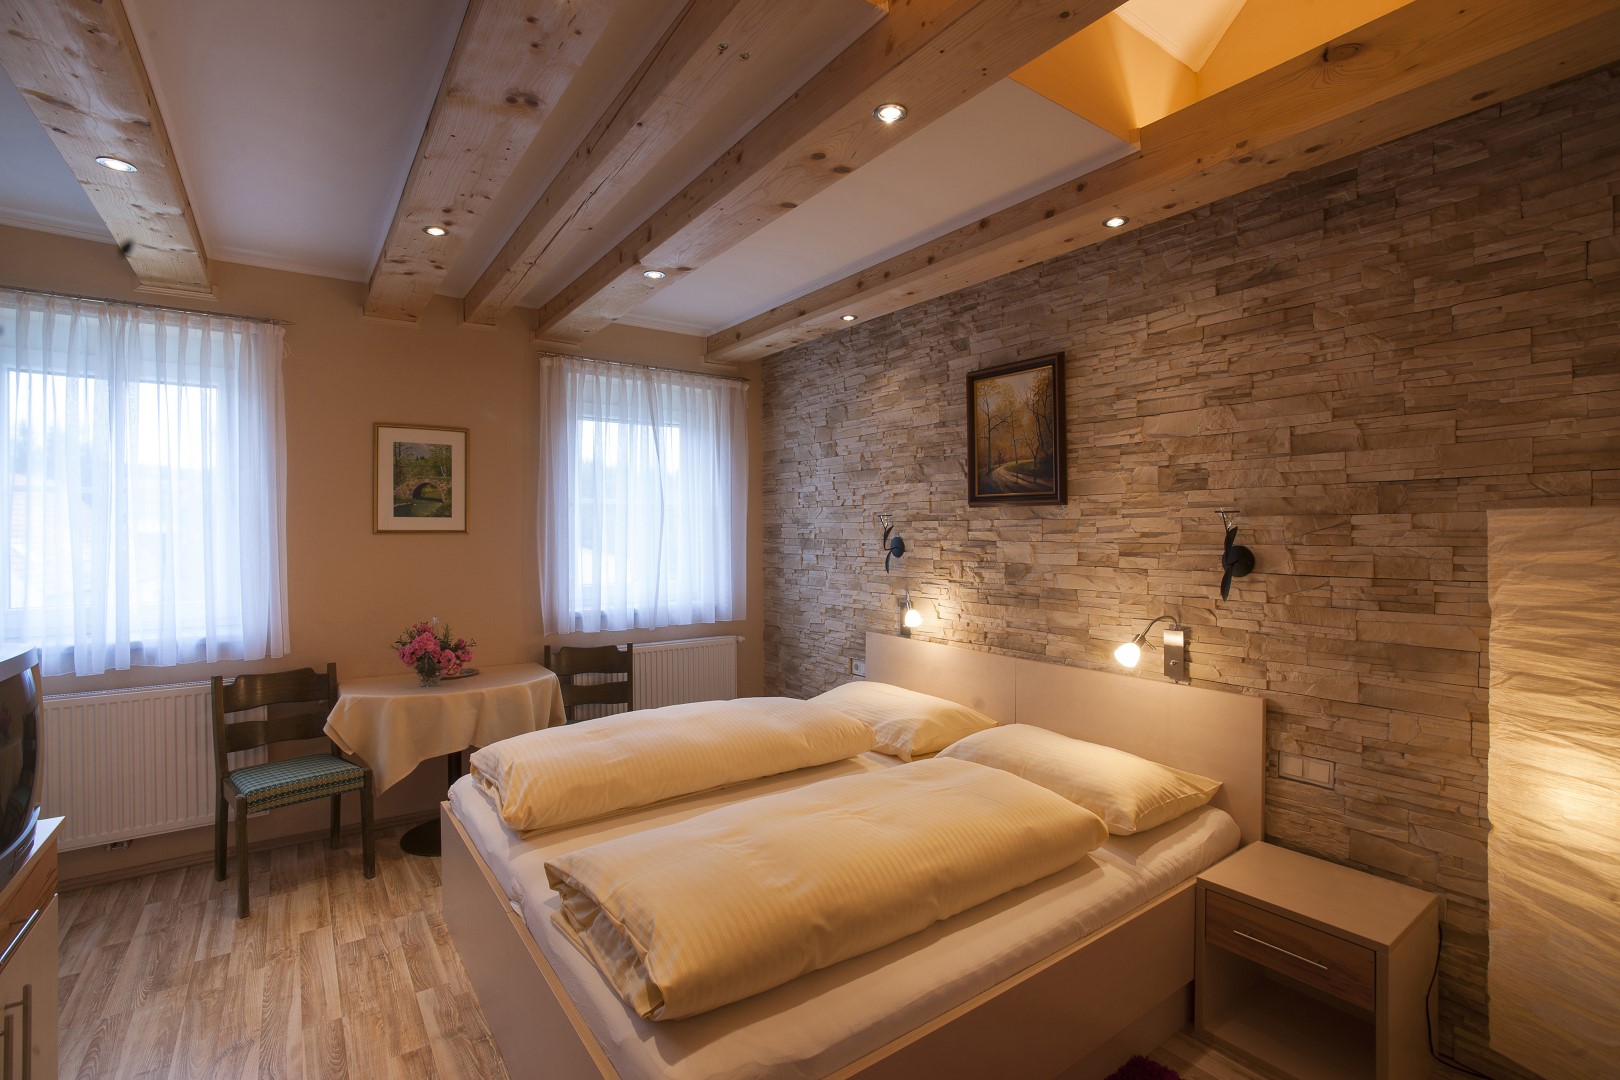 Behagliches Zimmer mit Naturholzbalken, gemütlichem Doppelbett und Steinwand im Gasthaus Treiber.